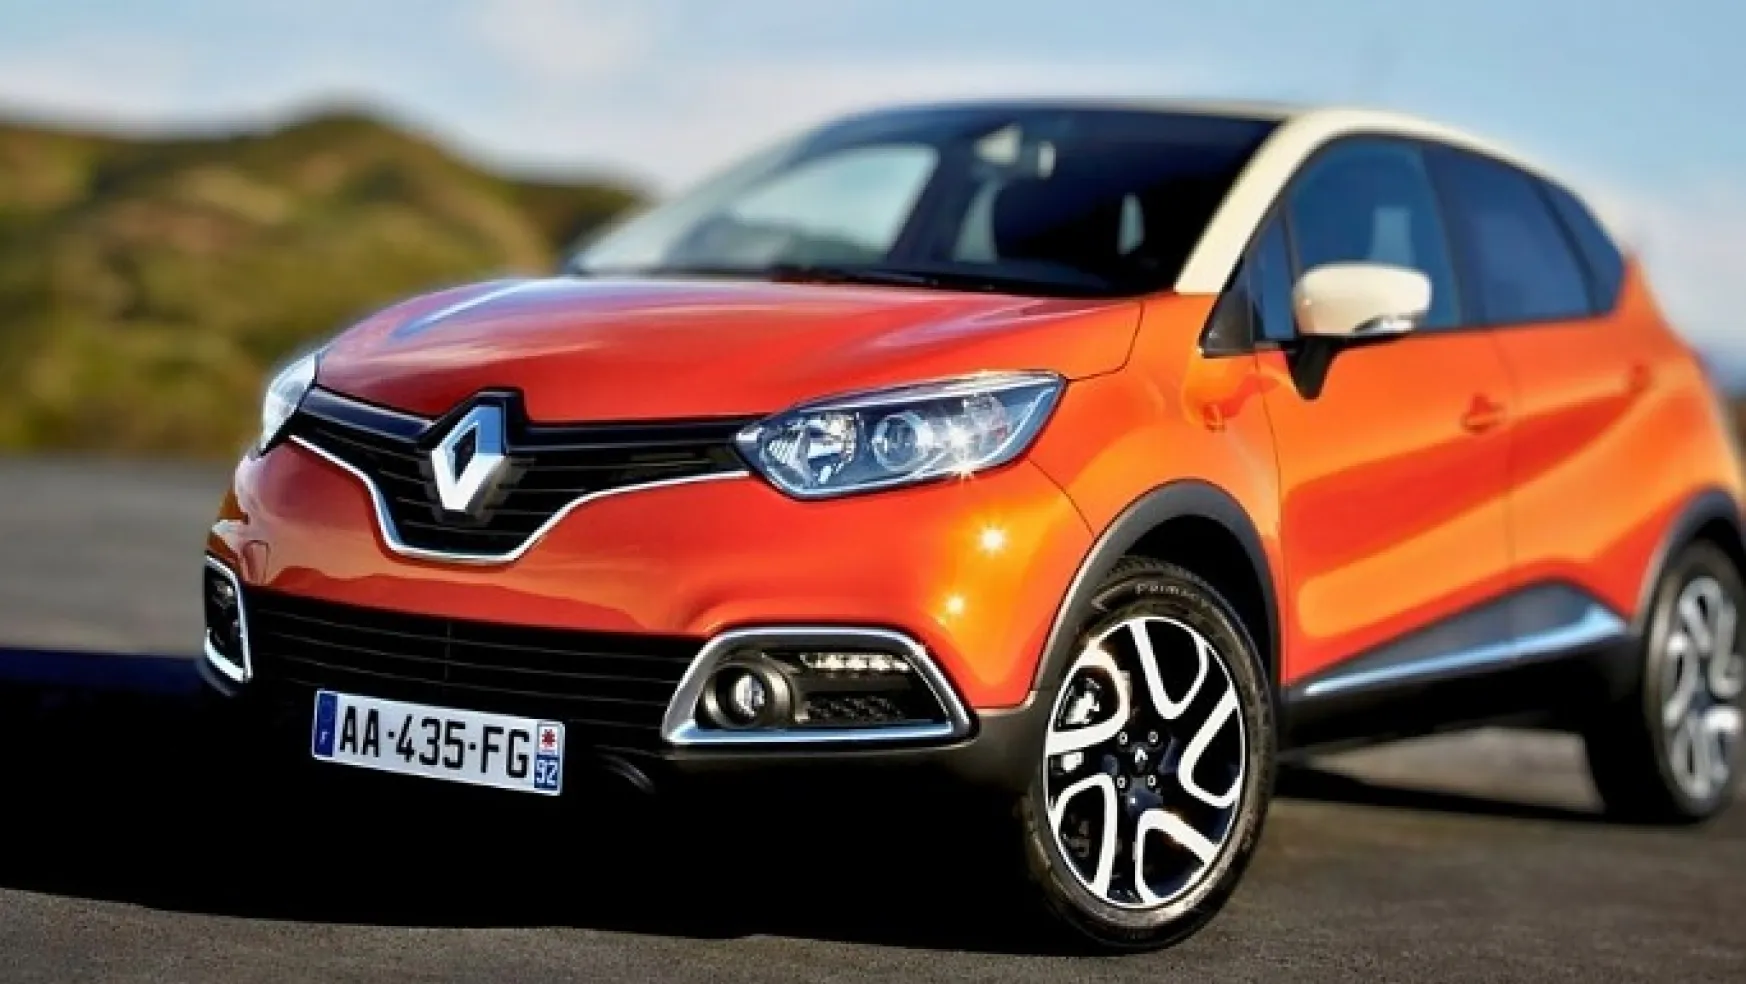 Renault Fabrikada Yeniledi Fiyatları ve İkinci El Araç Modellerini Açıkladı! 230.000'ye Dahi Araç Almak Mümkün